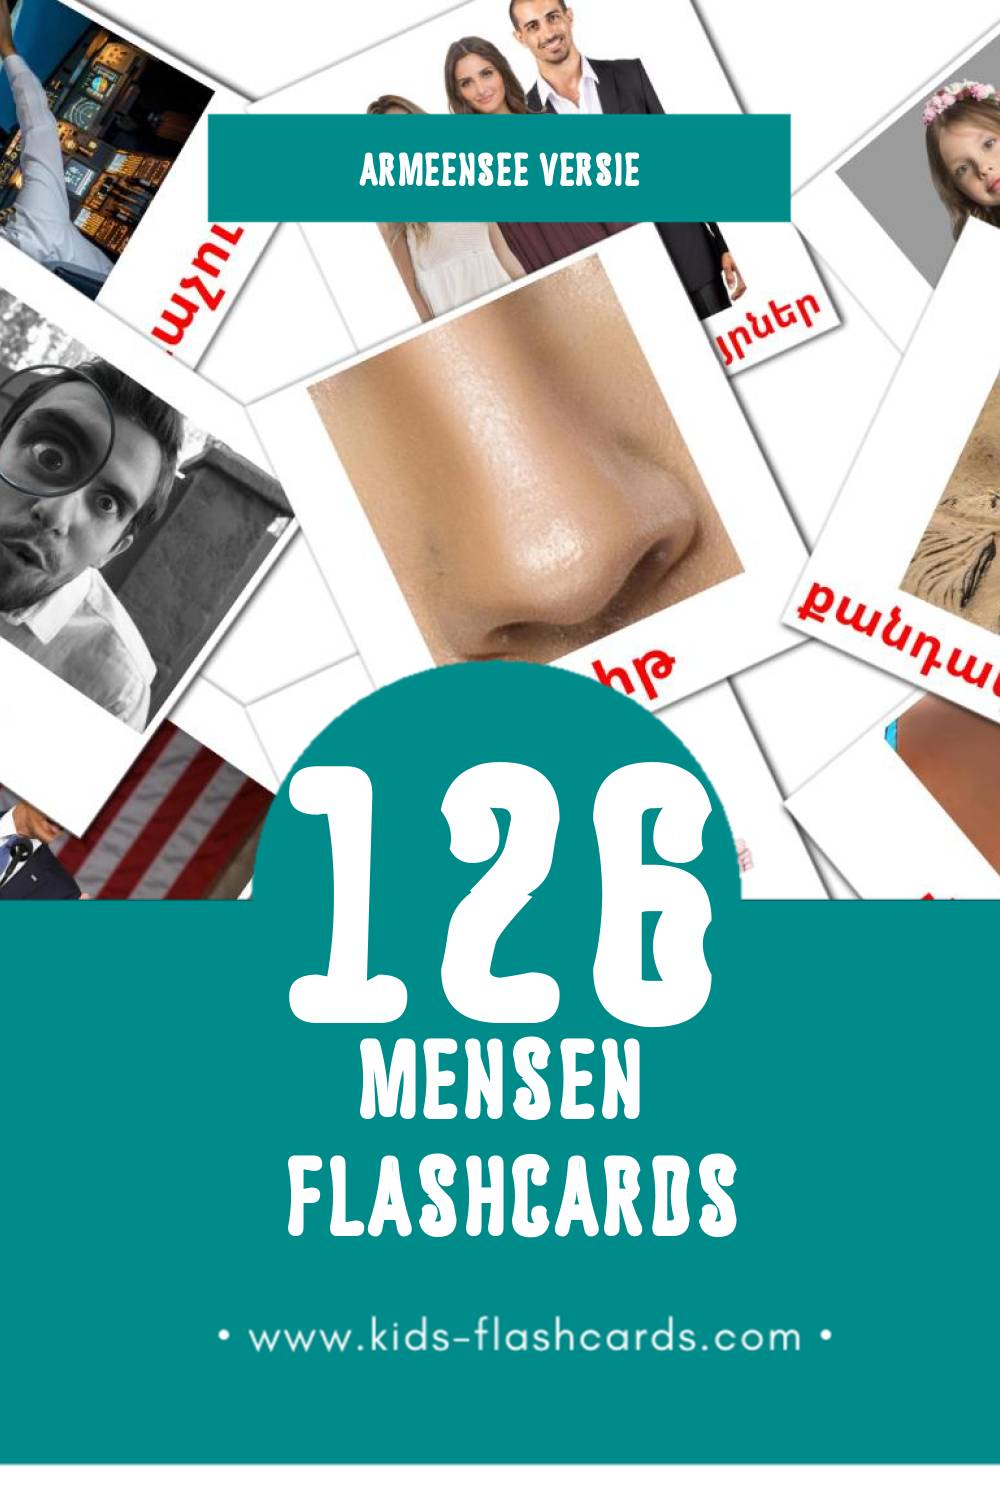 Visuele Ժողովուրդ Flashcards voor Kleuters (177 kaarten in het Armeense)